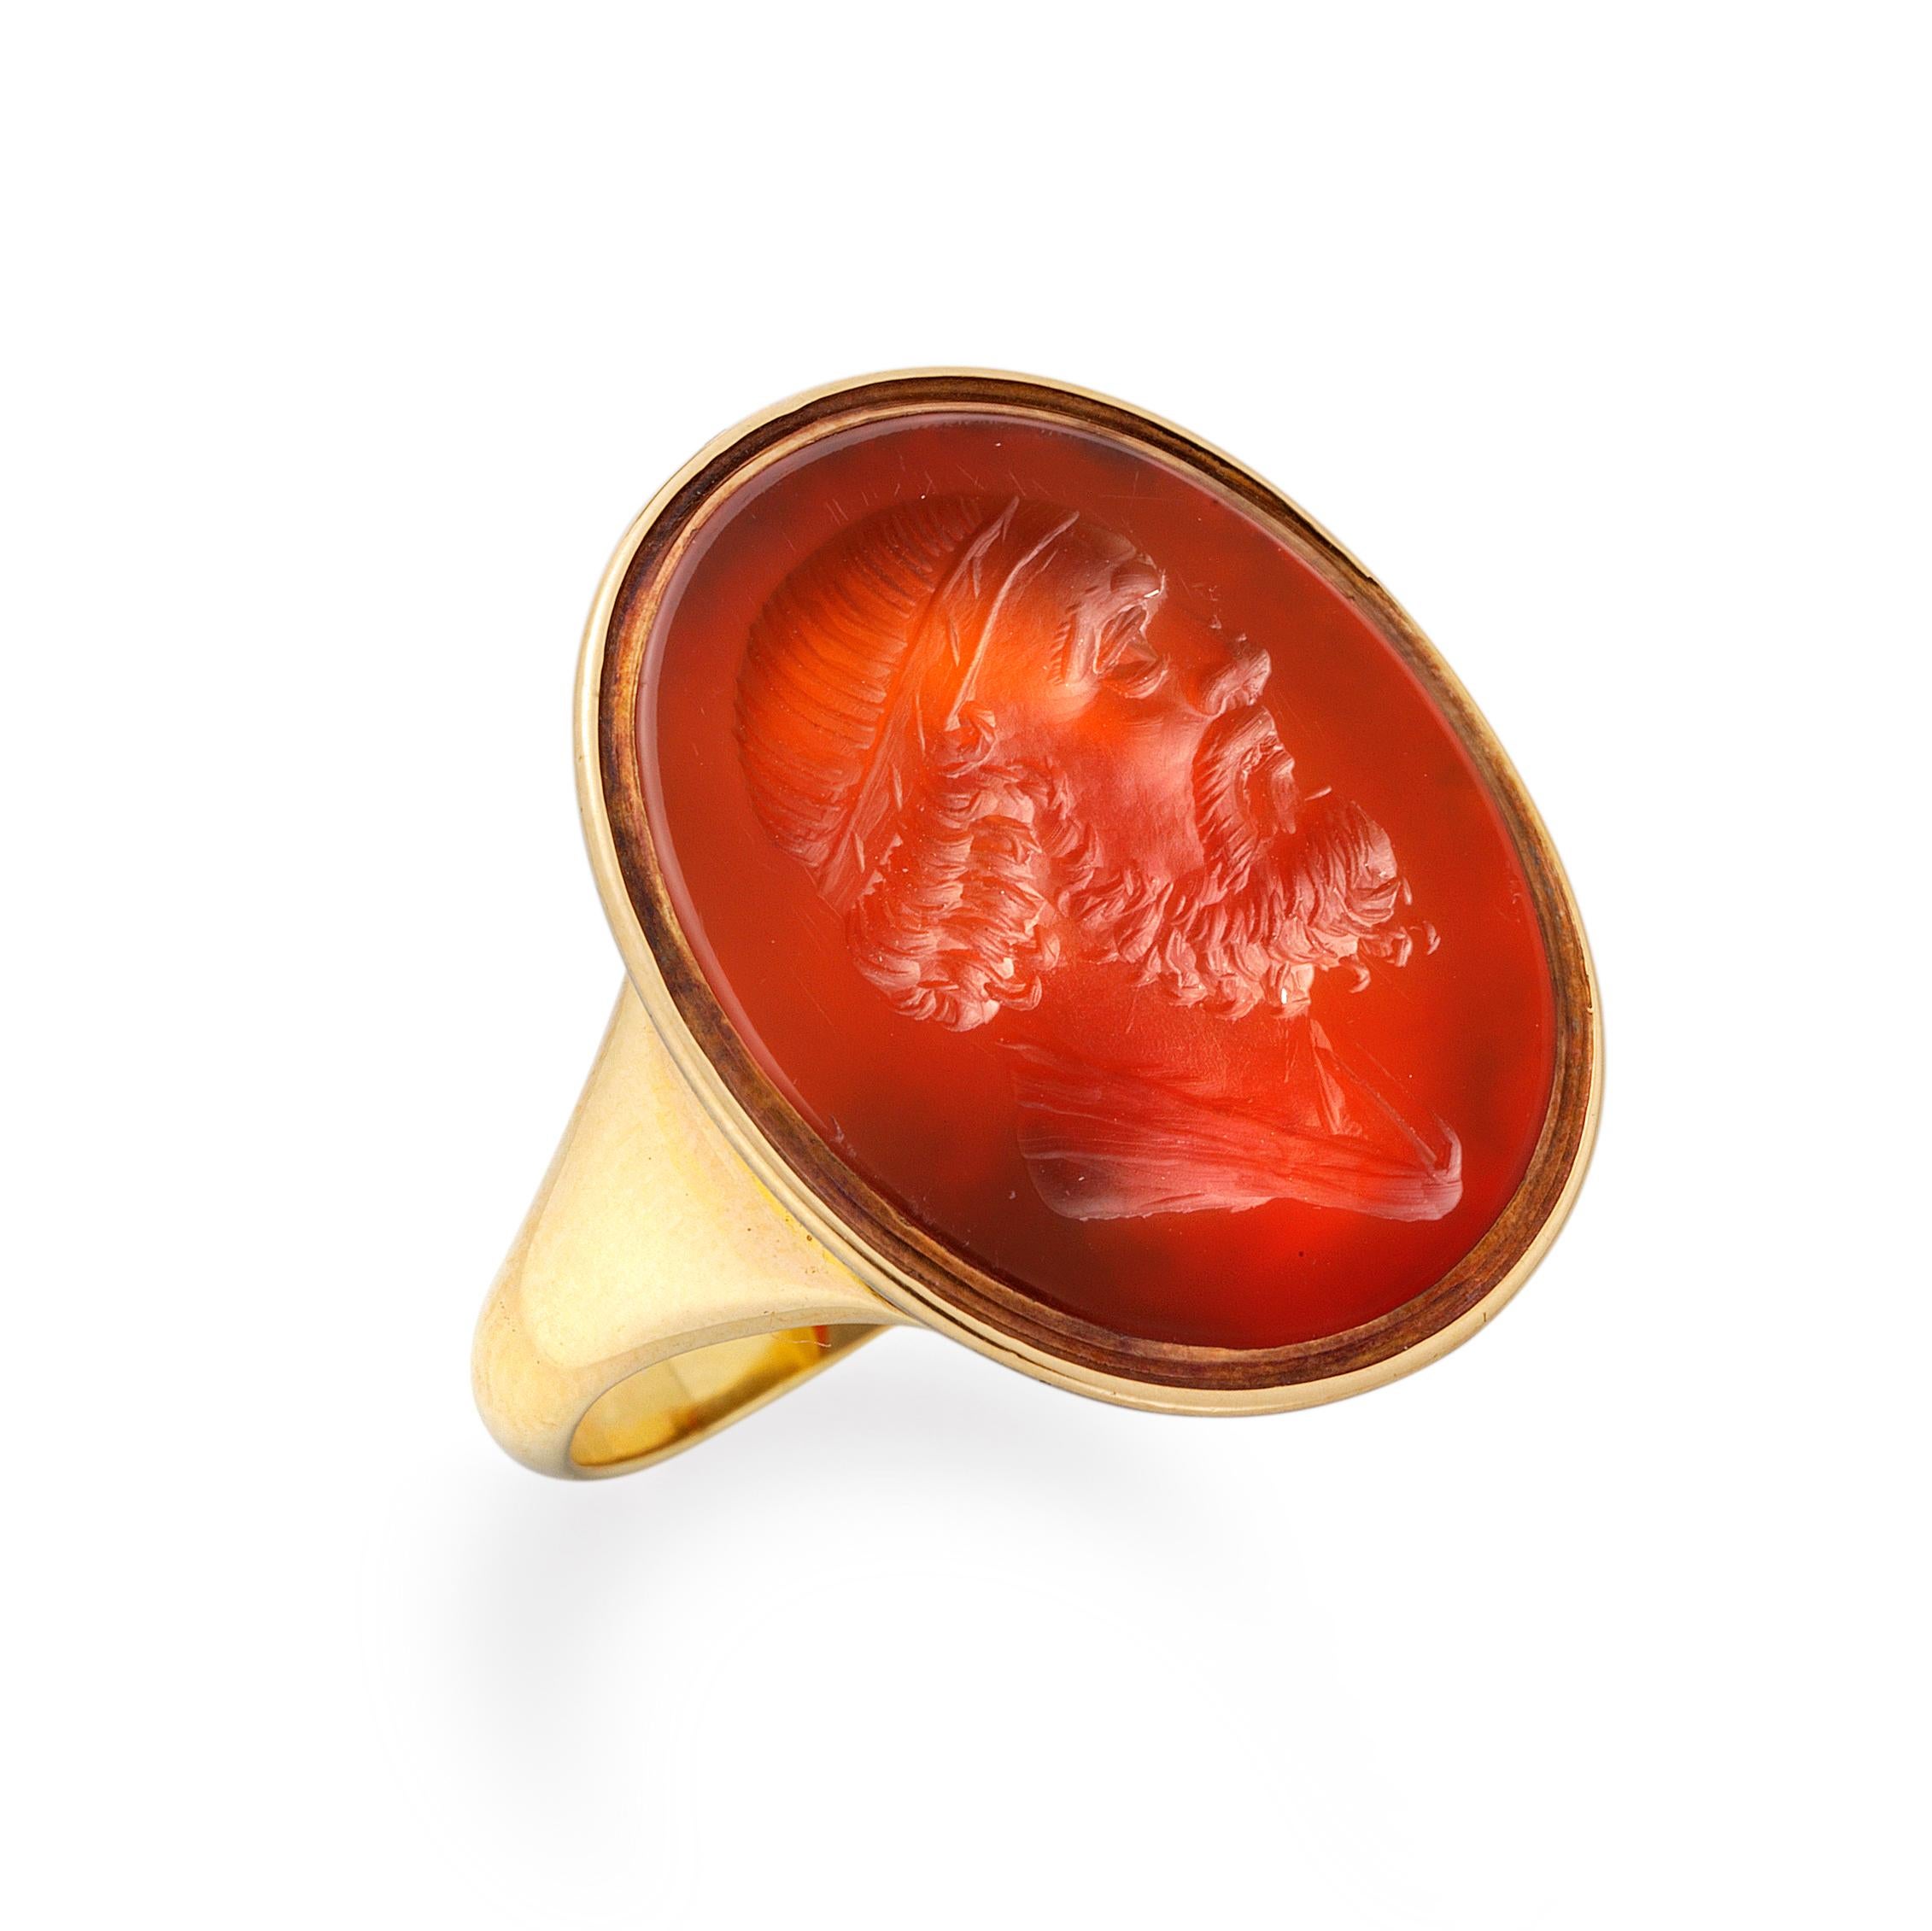 Ein georgischer Karneol-Intaglio-Ring, der ovale Karneol misst 21 x 18 mm, ist mit einem klassischen männlichen Kopf mit Bart und im Profil graviert, in einer Fassung aus Gelbgold mit offenem Rücken und spitzen Goldschultern.

Die Fingergröße der